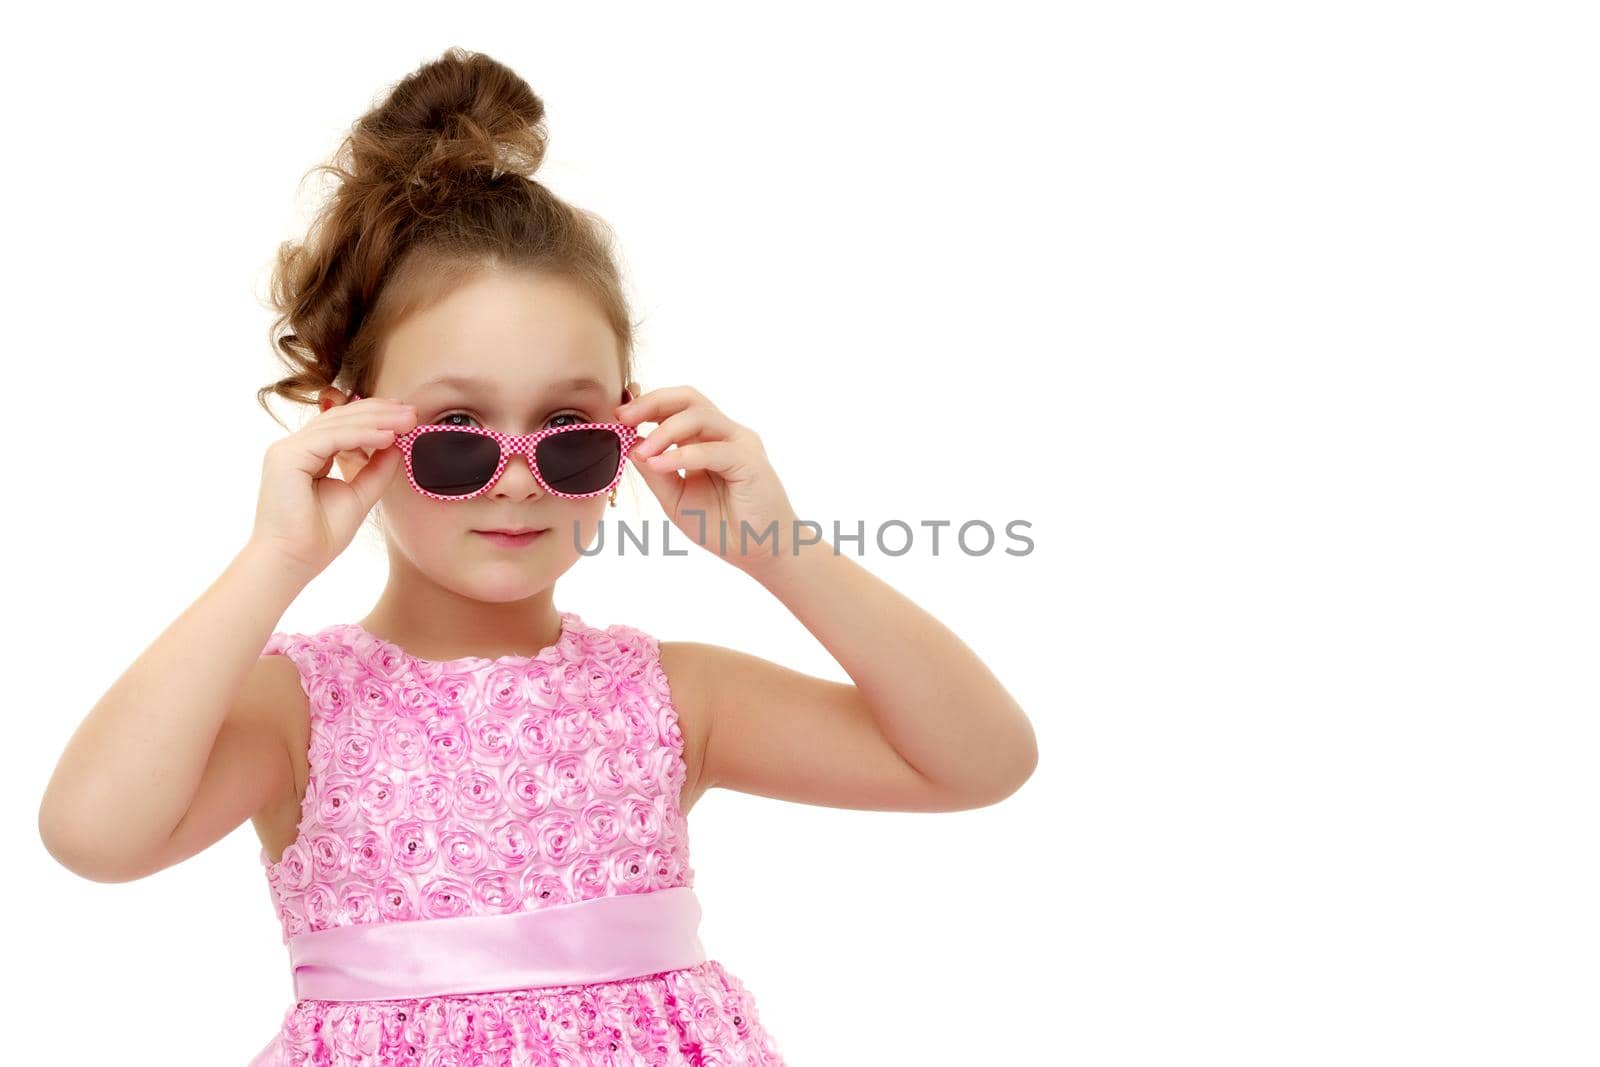 Little girl in sunglasses.Isolated on white background. by kolesnikov_studio